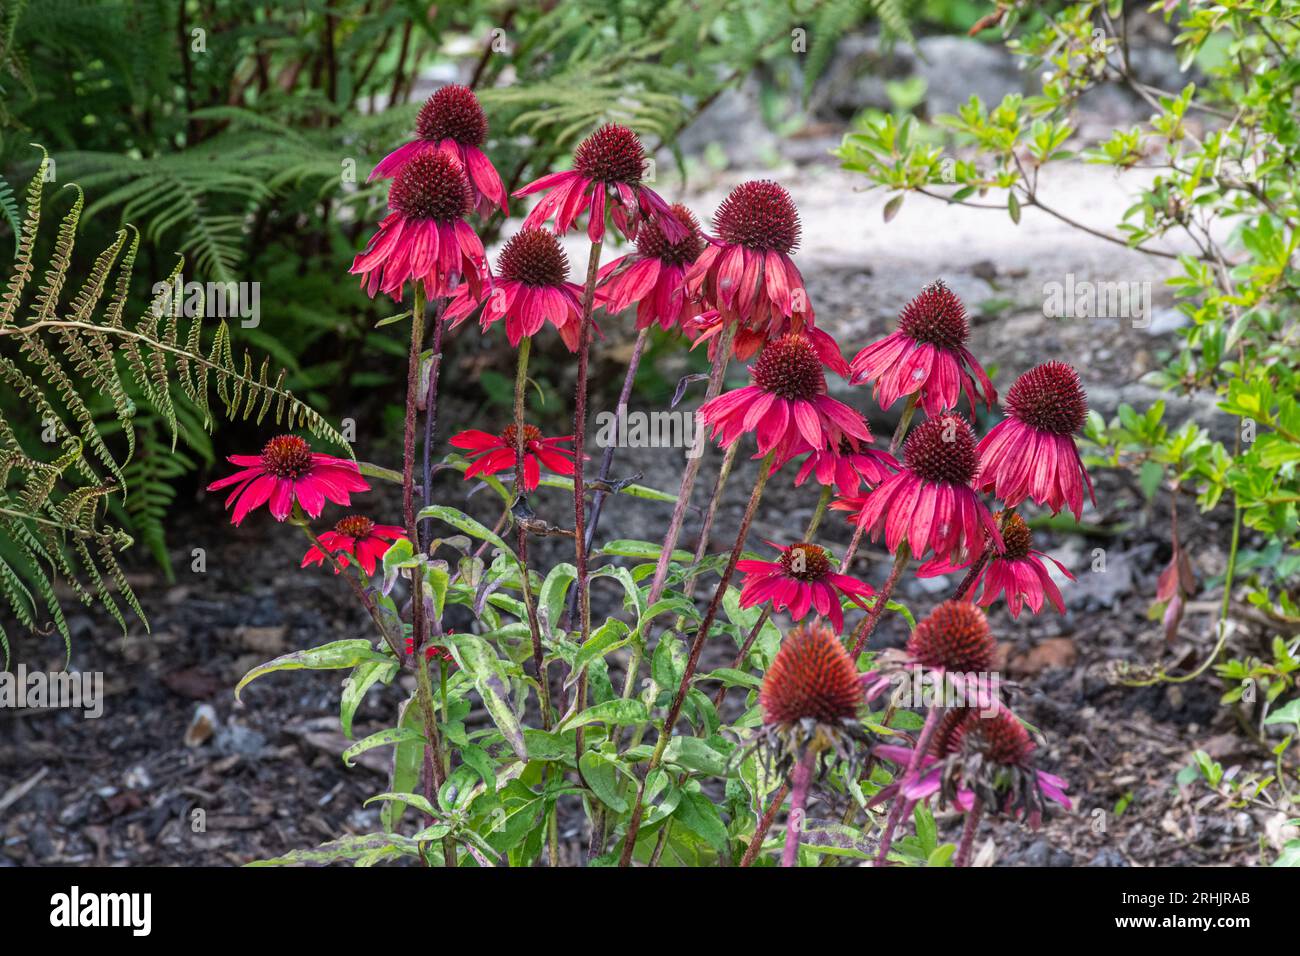 Échinacée à coneflower 'Cheyenne Spirit', fleurs rouges roses de la plante herbacée vivace en août ou en été, Angleterre, Royaume-Uni Banque D'Images